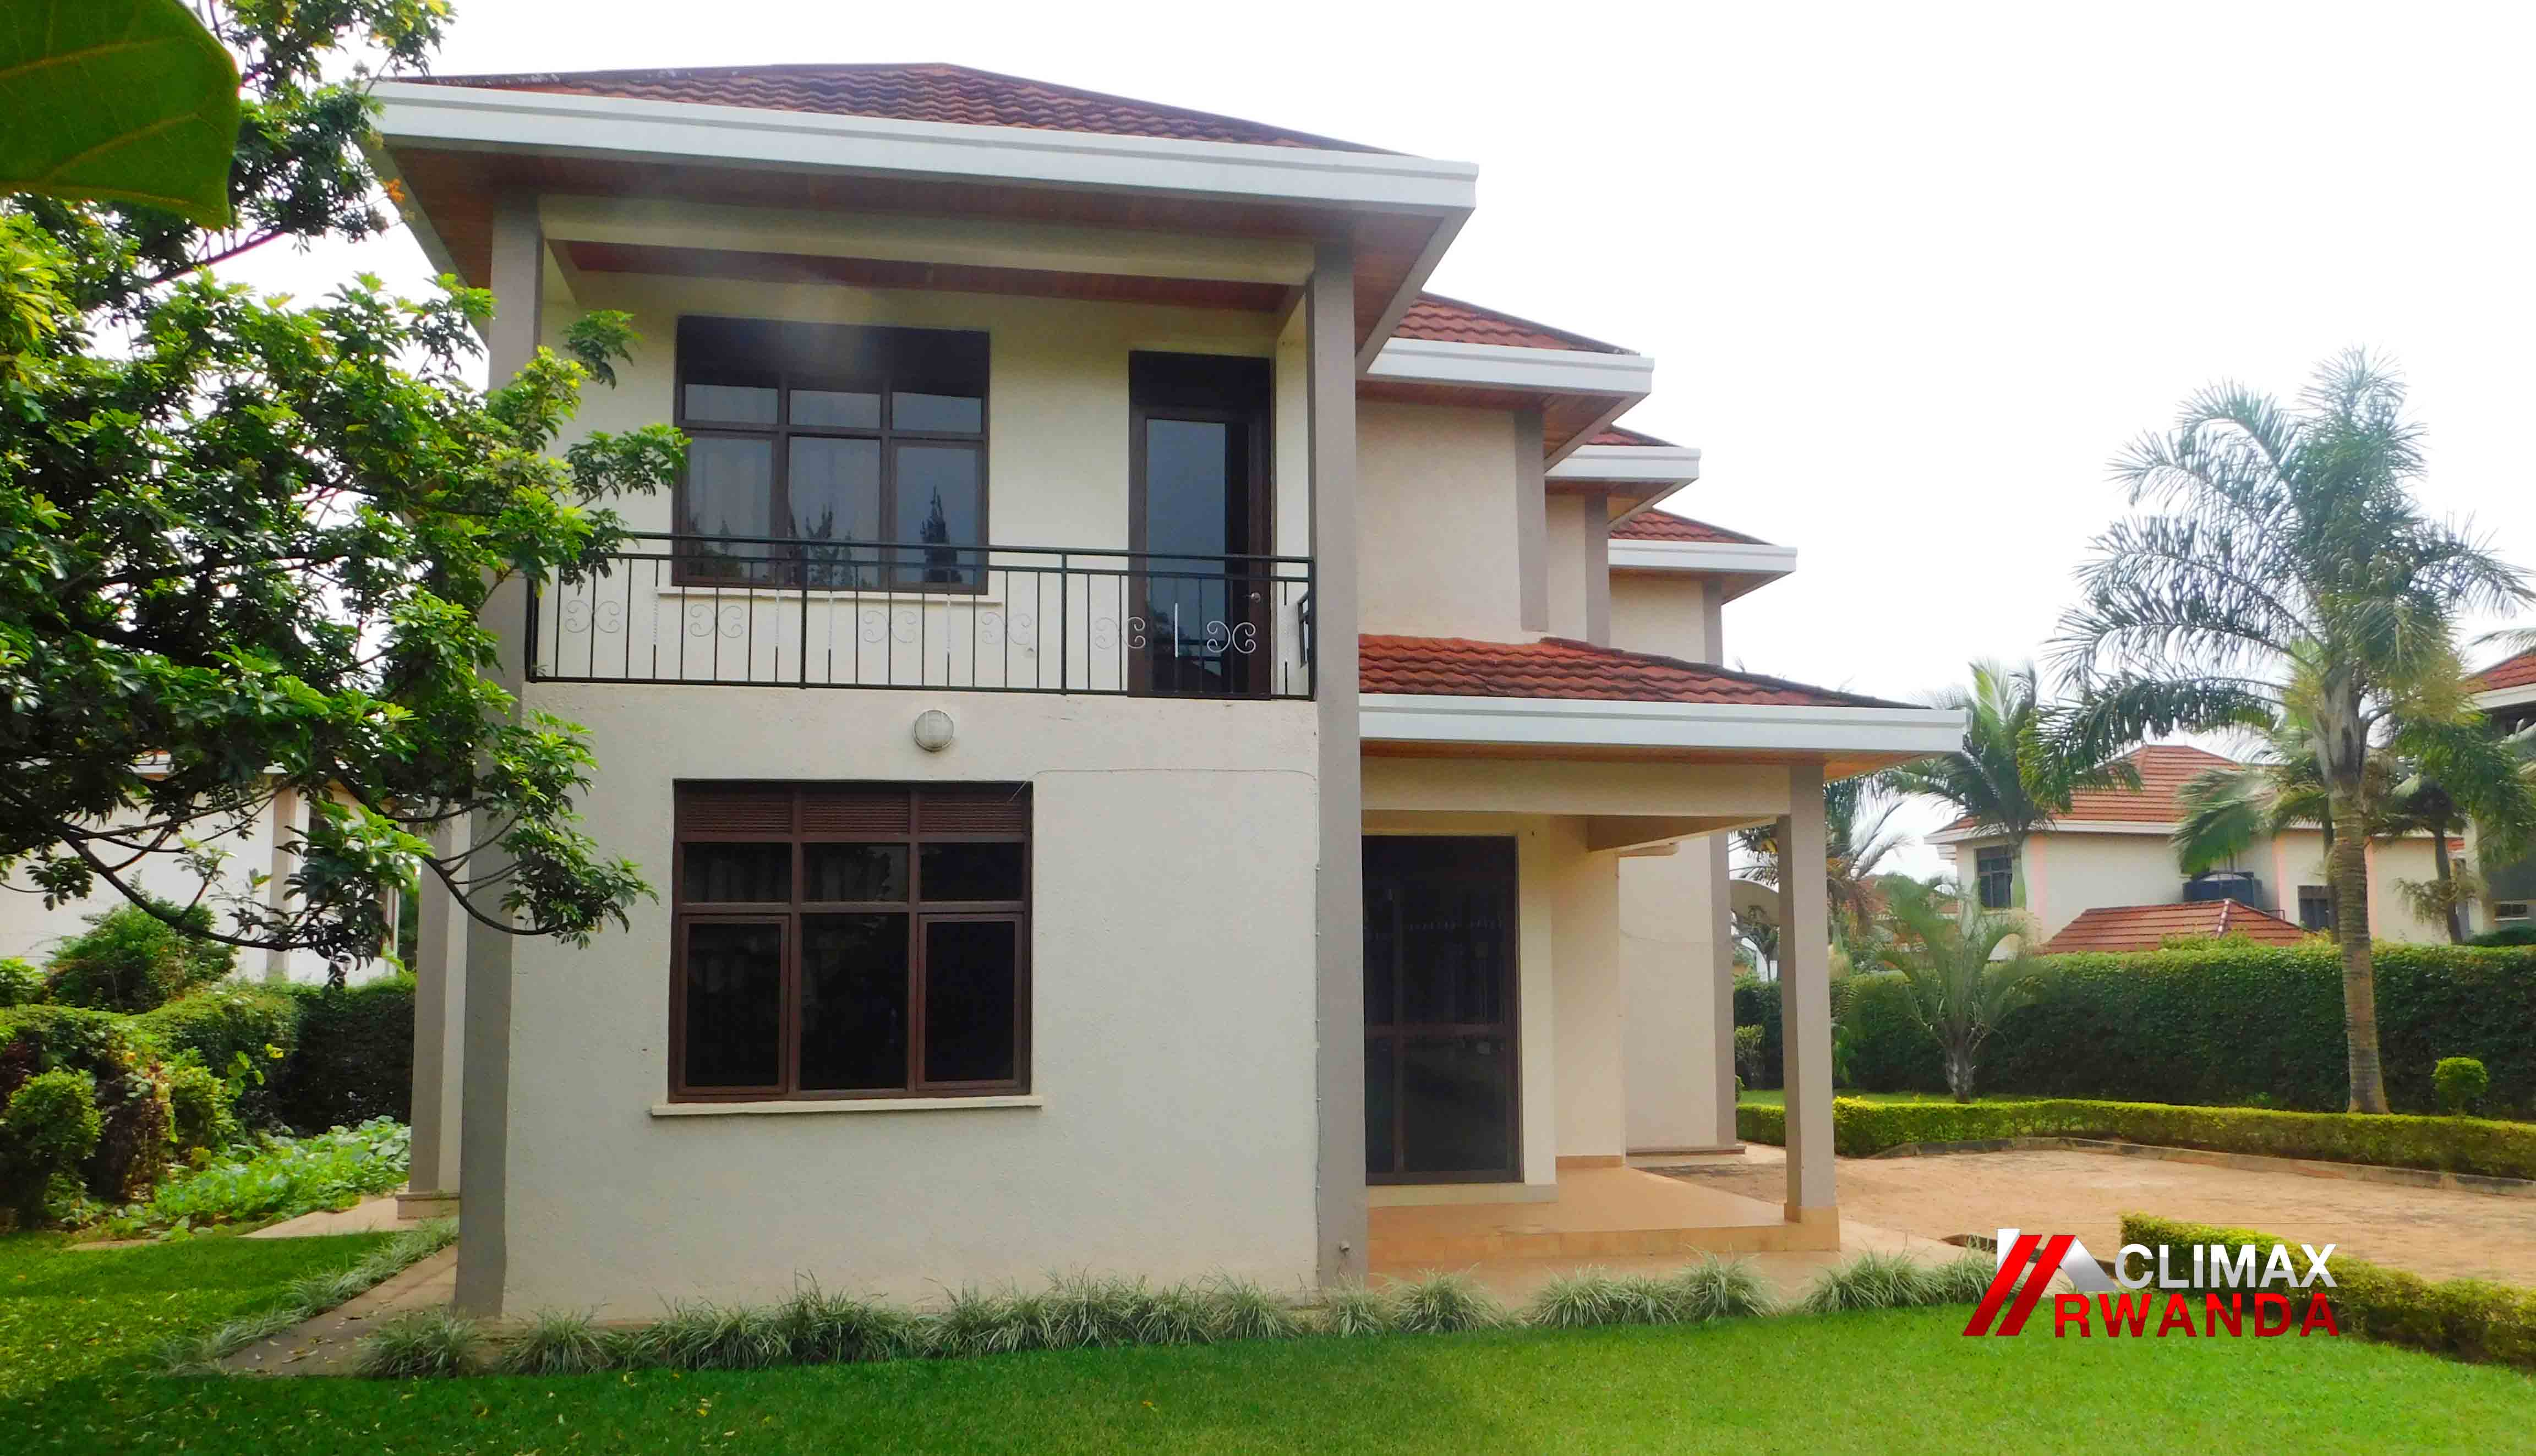 Unfurnished Villa for rent in Kagugu